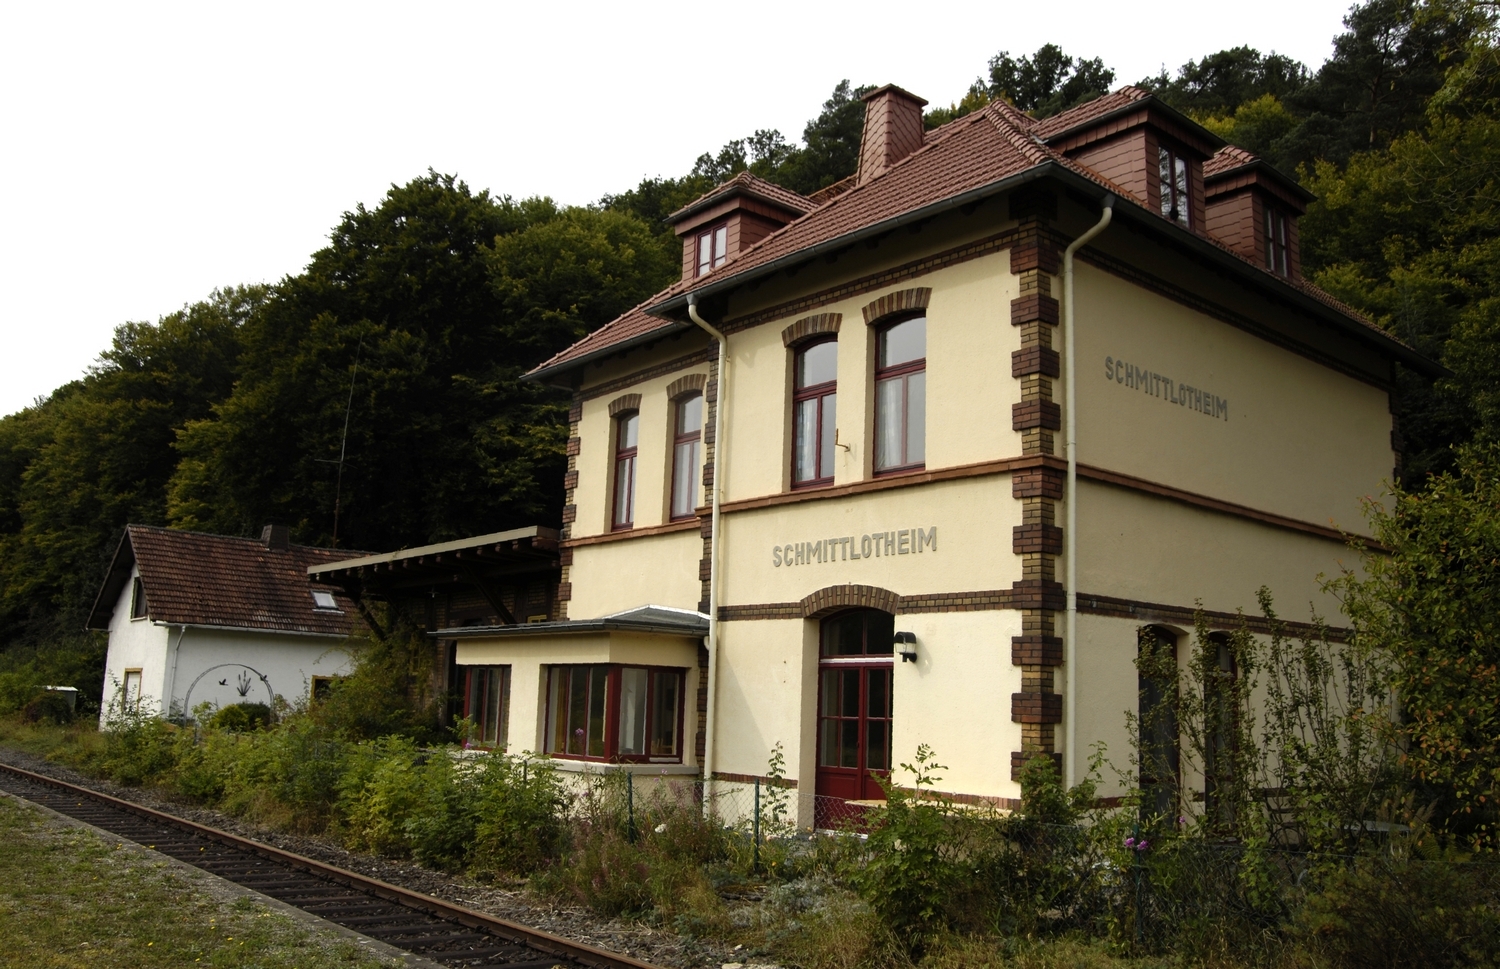 Schmittlotheim, ehemaliger Bahnhof